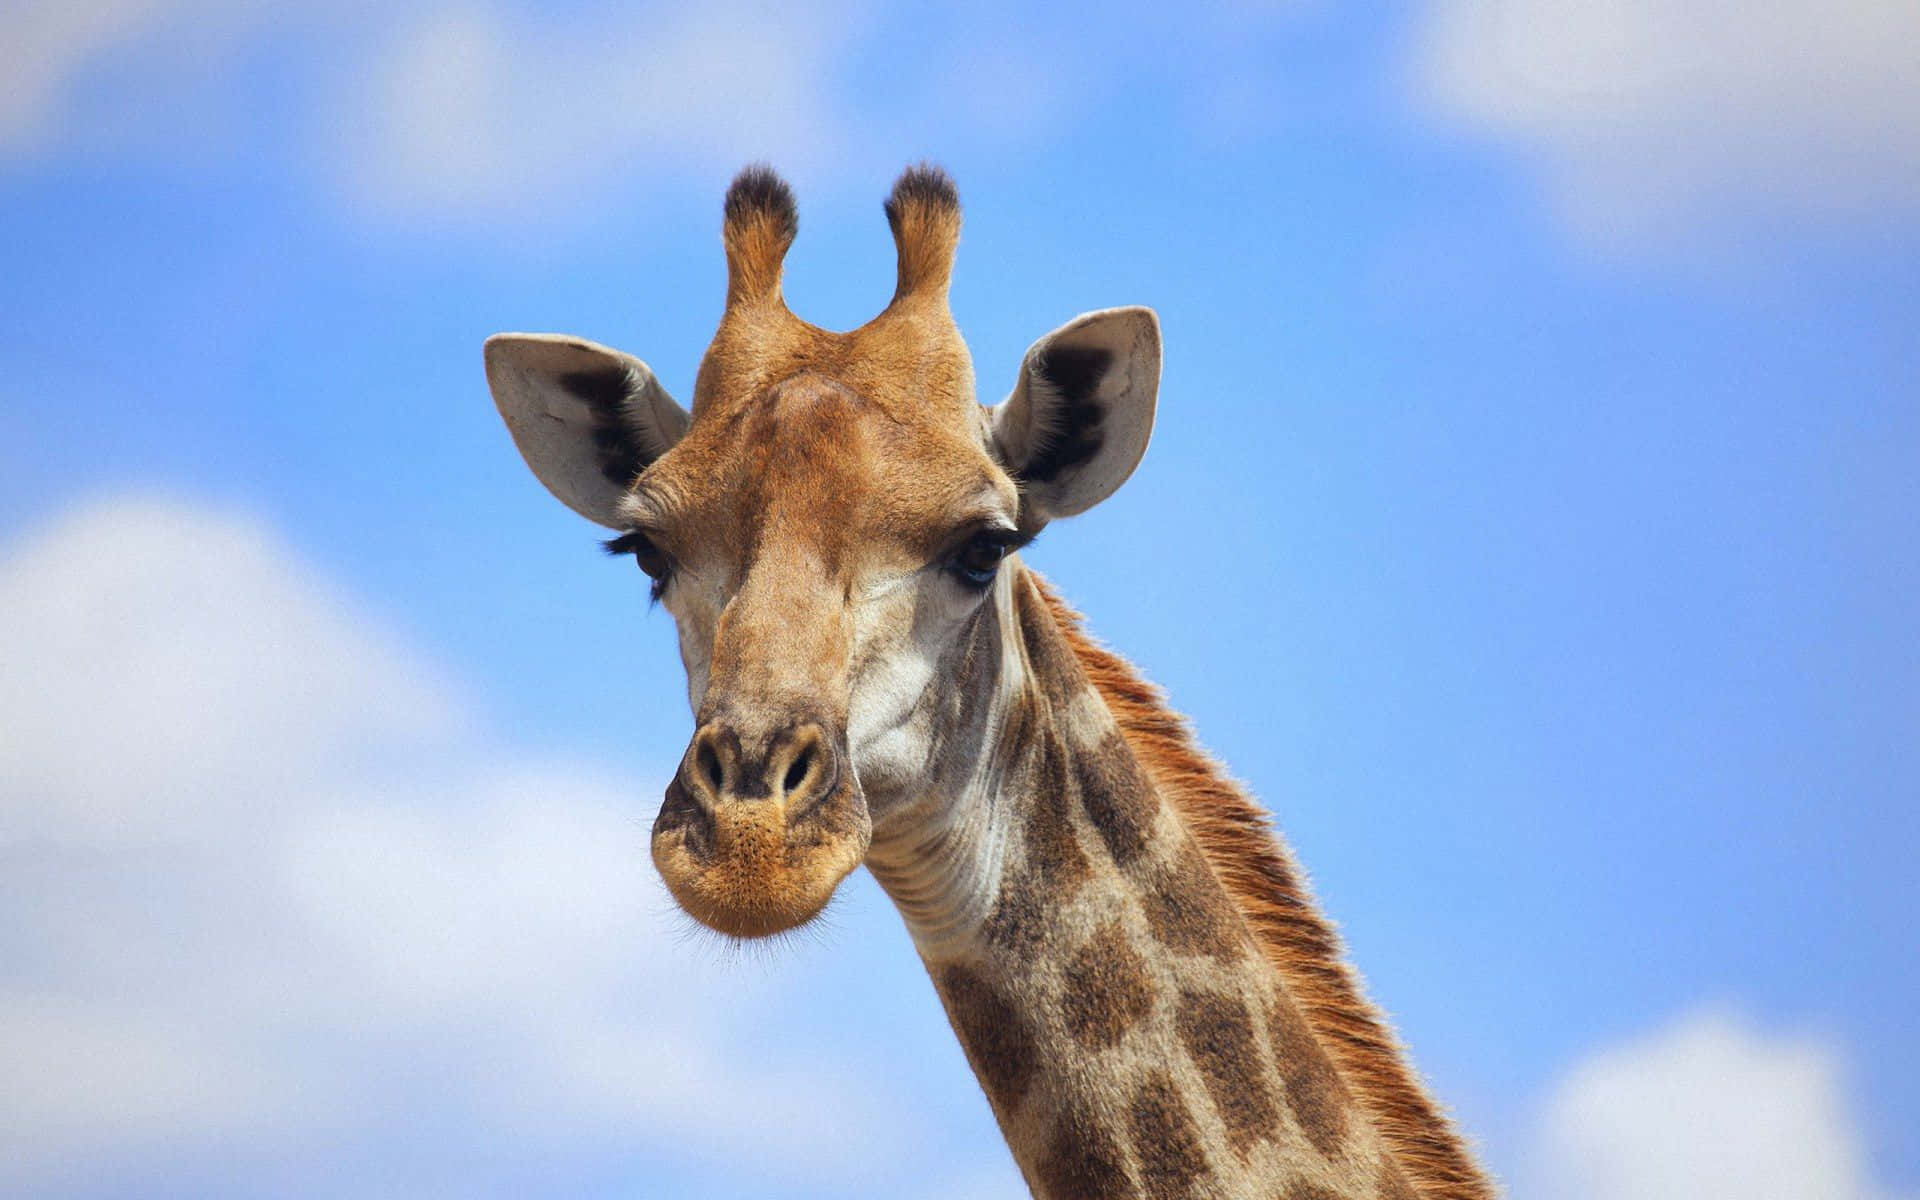 Condividiquesto Simpatico Volto Di Giraffa Con Gli Amici Sfondo